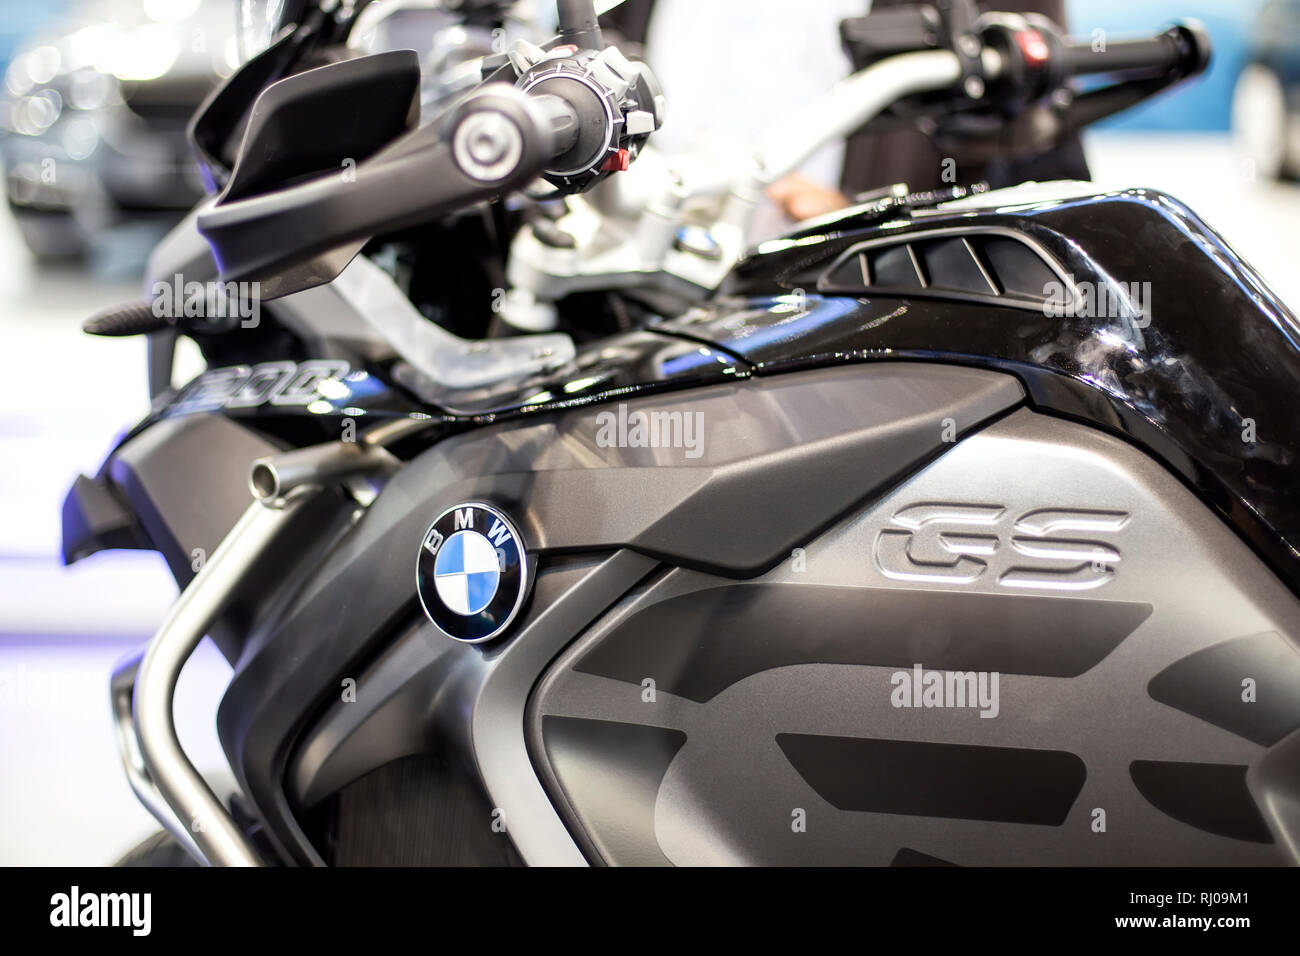 Belgrad, SERBIEN - 28. MÄRZ 2017: Detail der BMW 1200 GS Motorrad in  Belgrad, Serbien. Es ist Motorrad Modell in Berlin gefertigt, Deutschland  von BMW Stockfotografie - Alamy